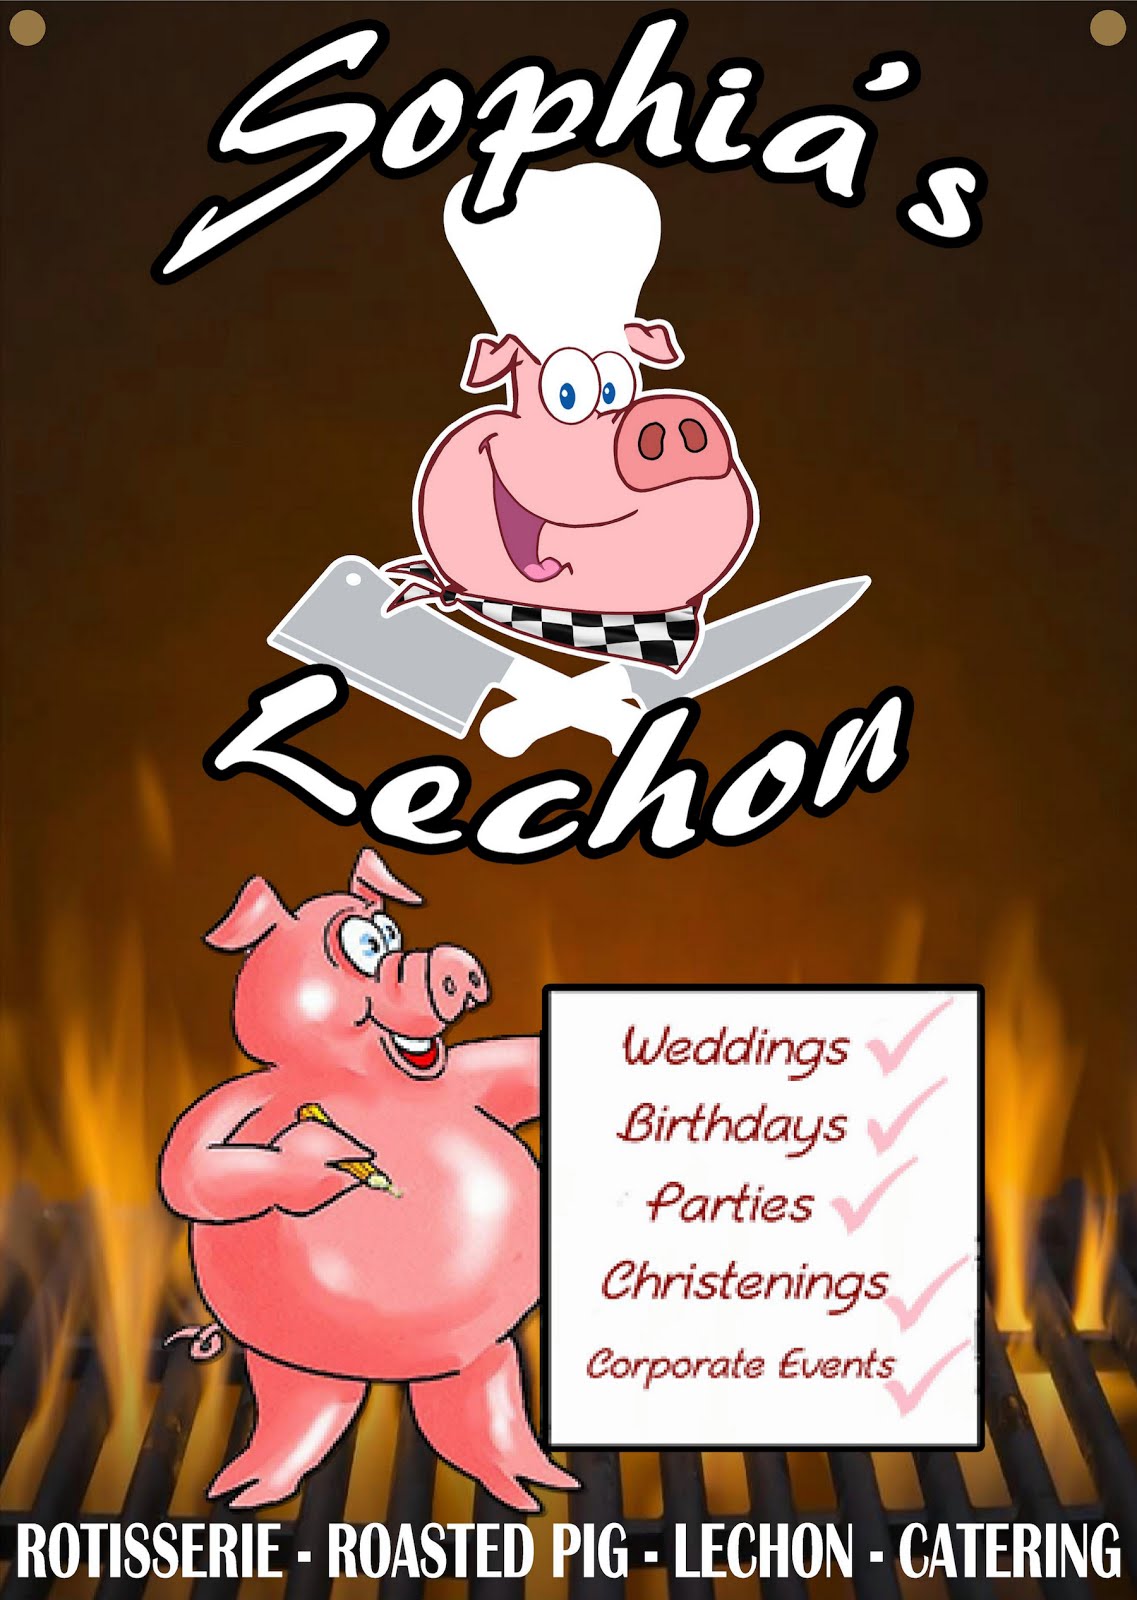 Advertisement for Crispy Lechon